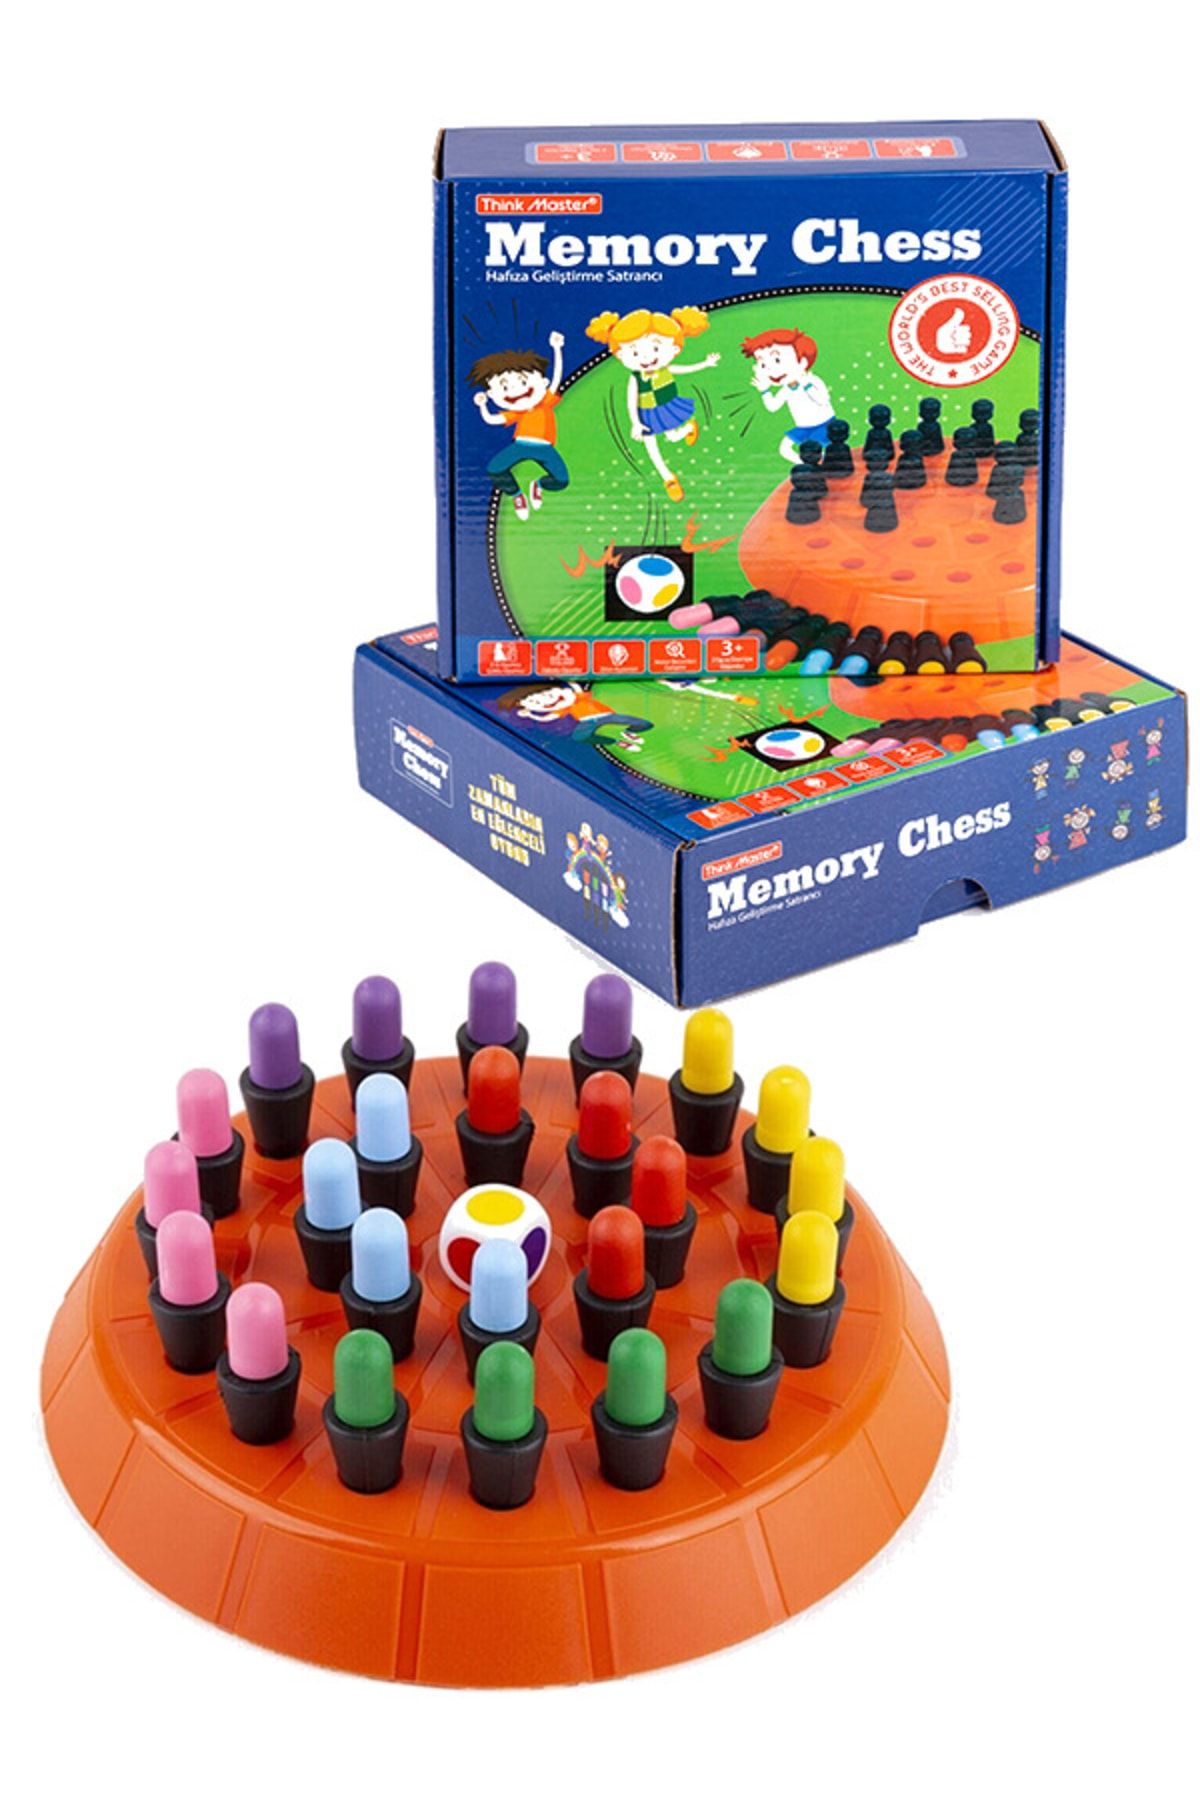 Memory Chess - Zeka Oyunu, Renklerle Hafıza Ve Zihin Geliştirme Satrancı